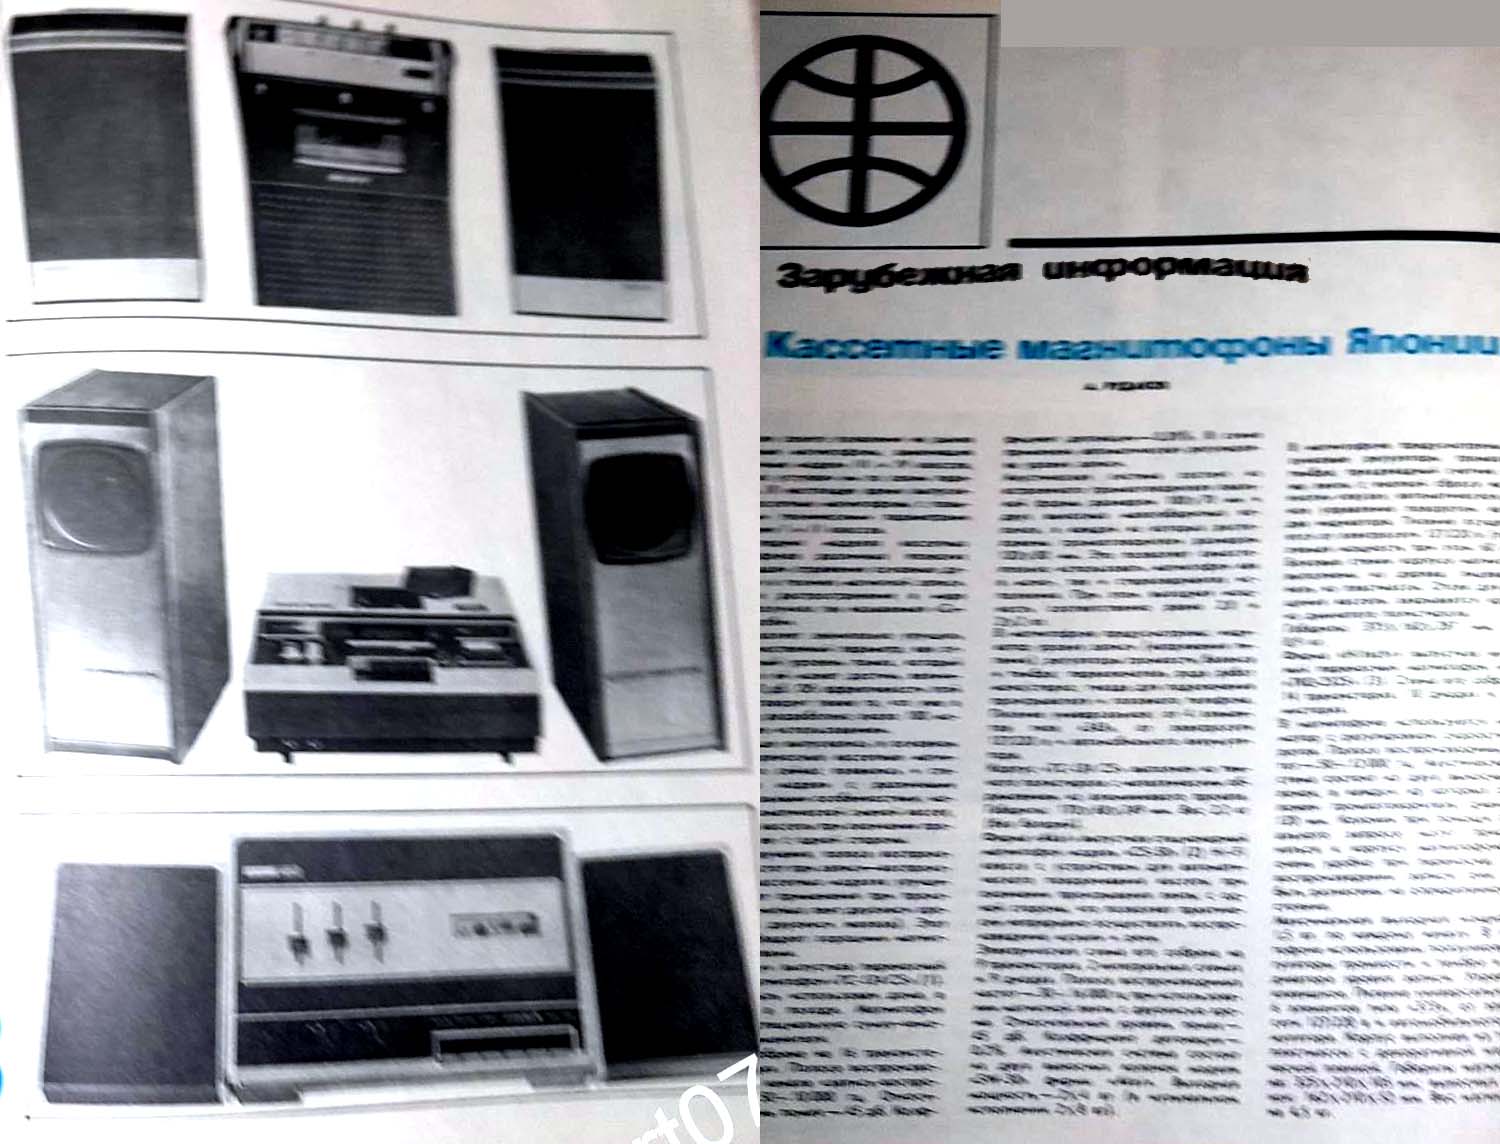 Журнал "Новые Товары" 1971 год: - Первые кассетные стерео магнитофоны высокого класса с горизонтальным расположением и загрузкой кассет